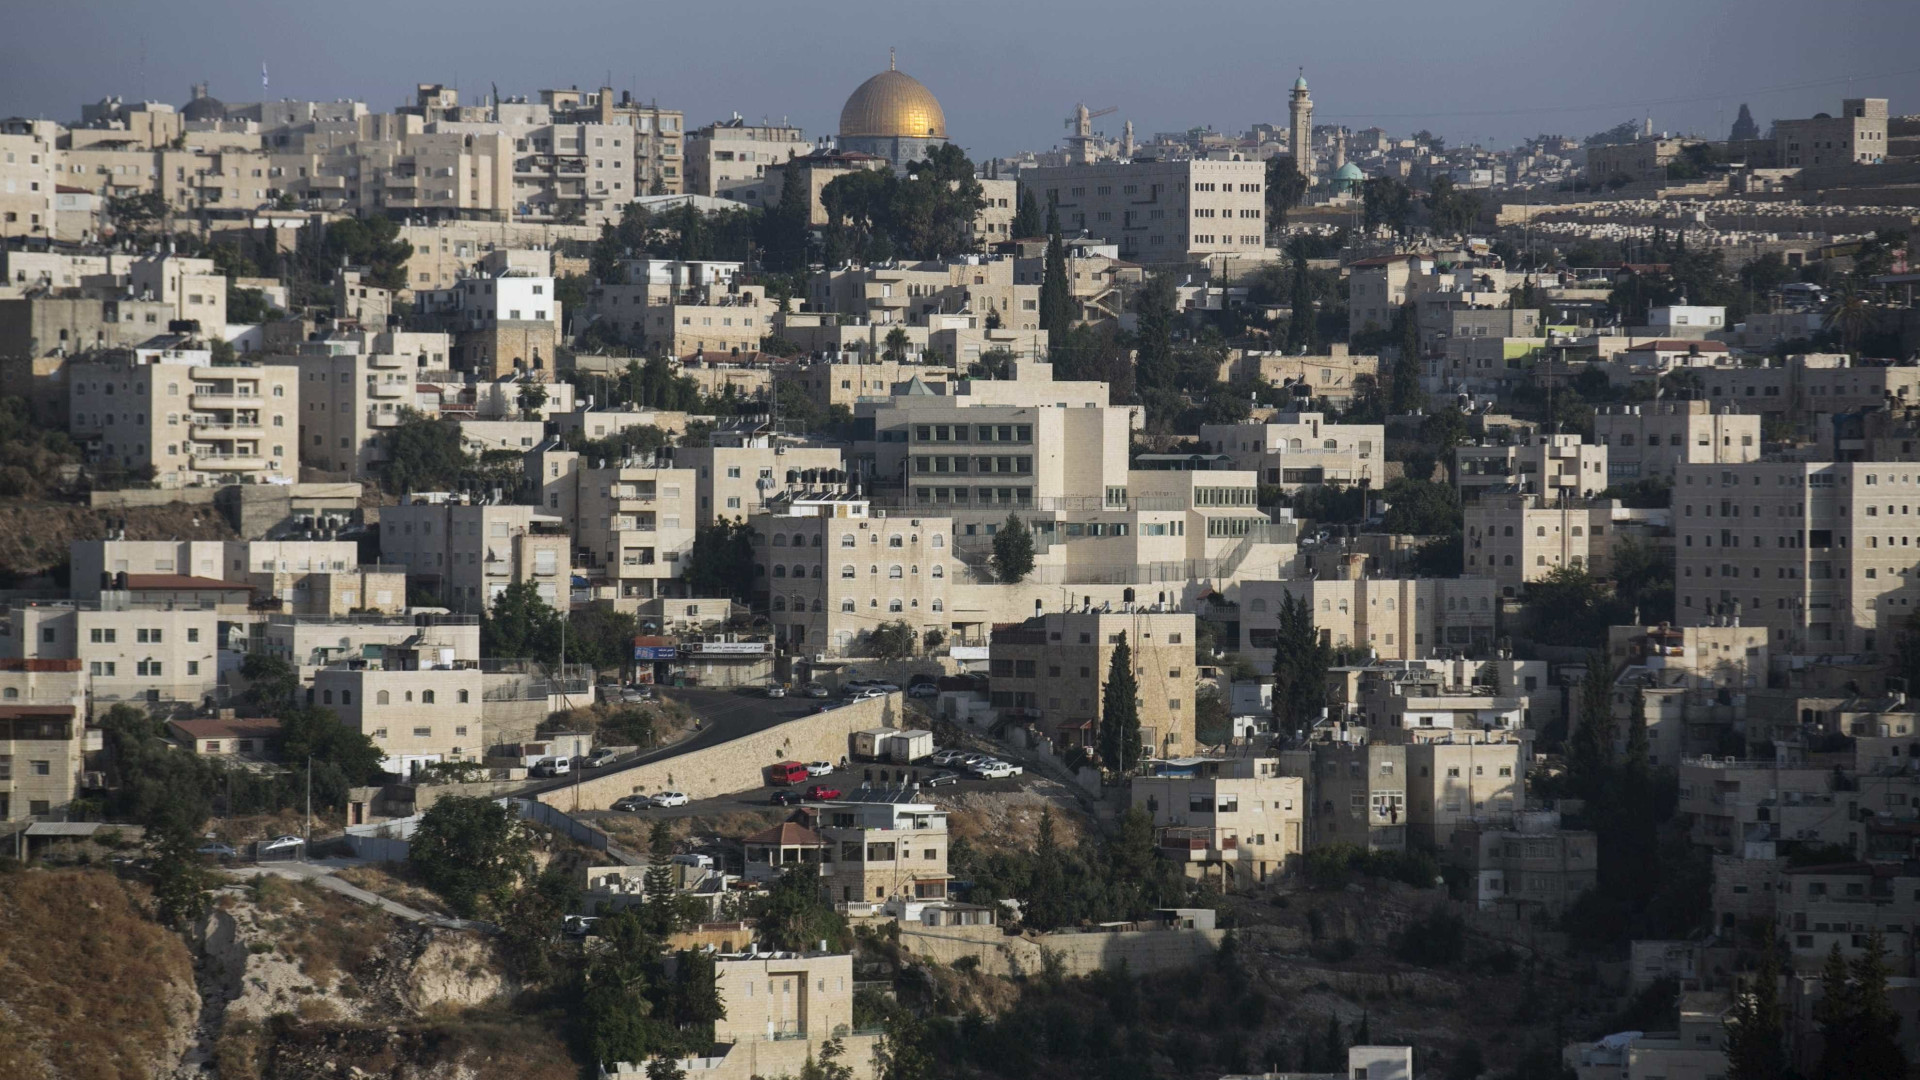 Detidos 2 árabes suspeitos de planejar atentado em Jerusalém